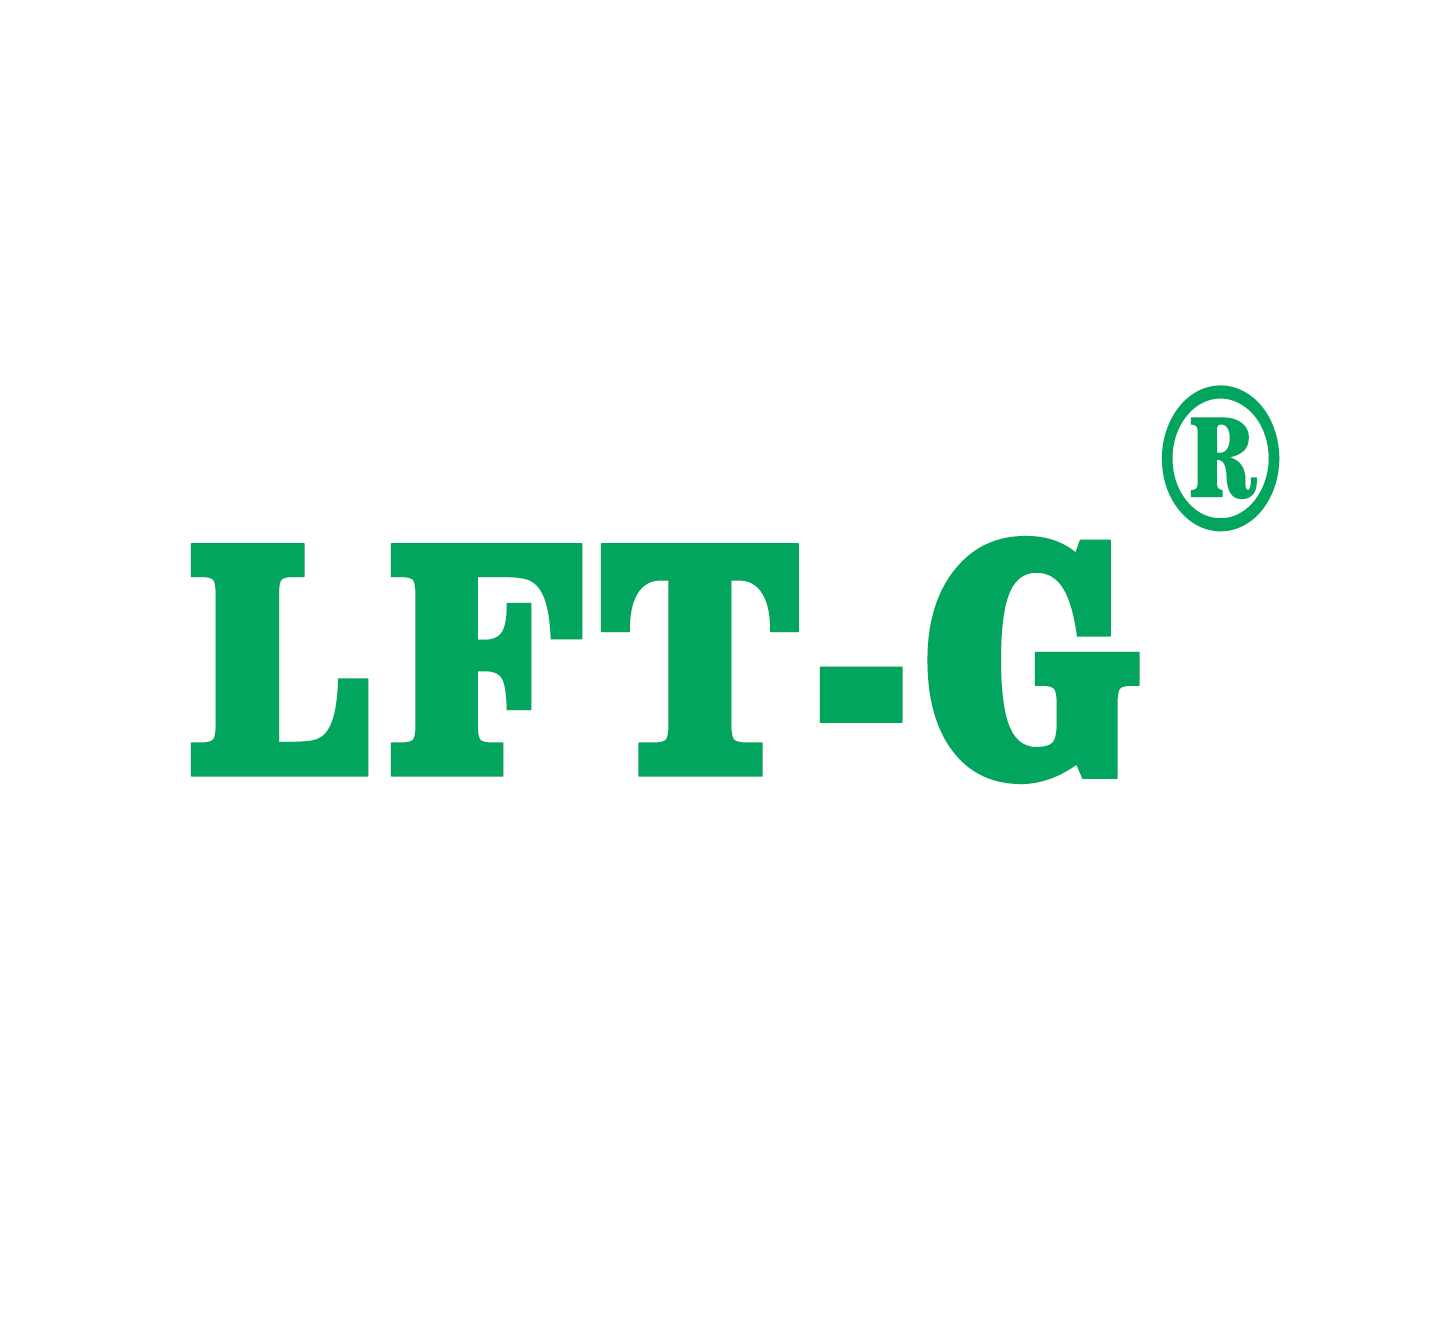  LFT-G ابدأ رحلة جديدة في العام الجديد